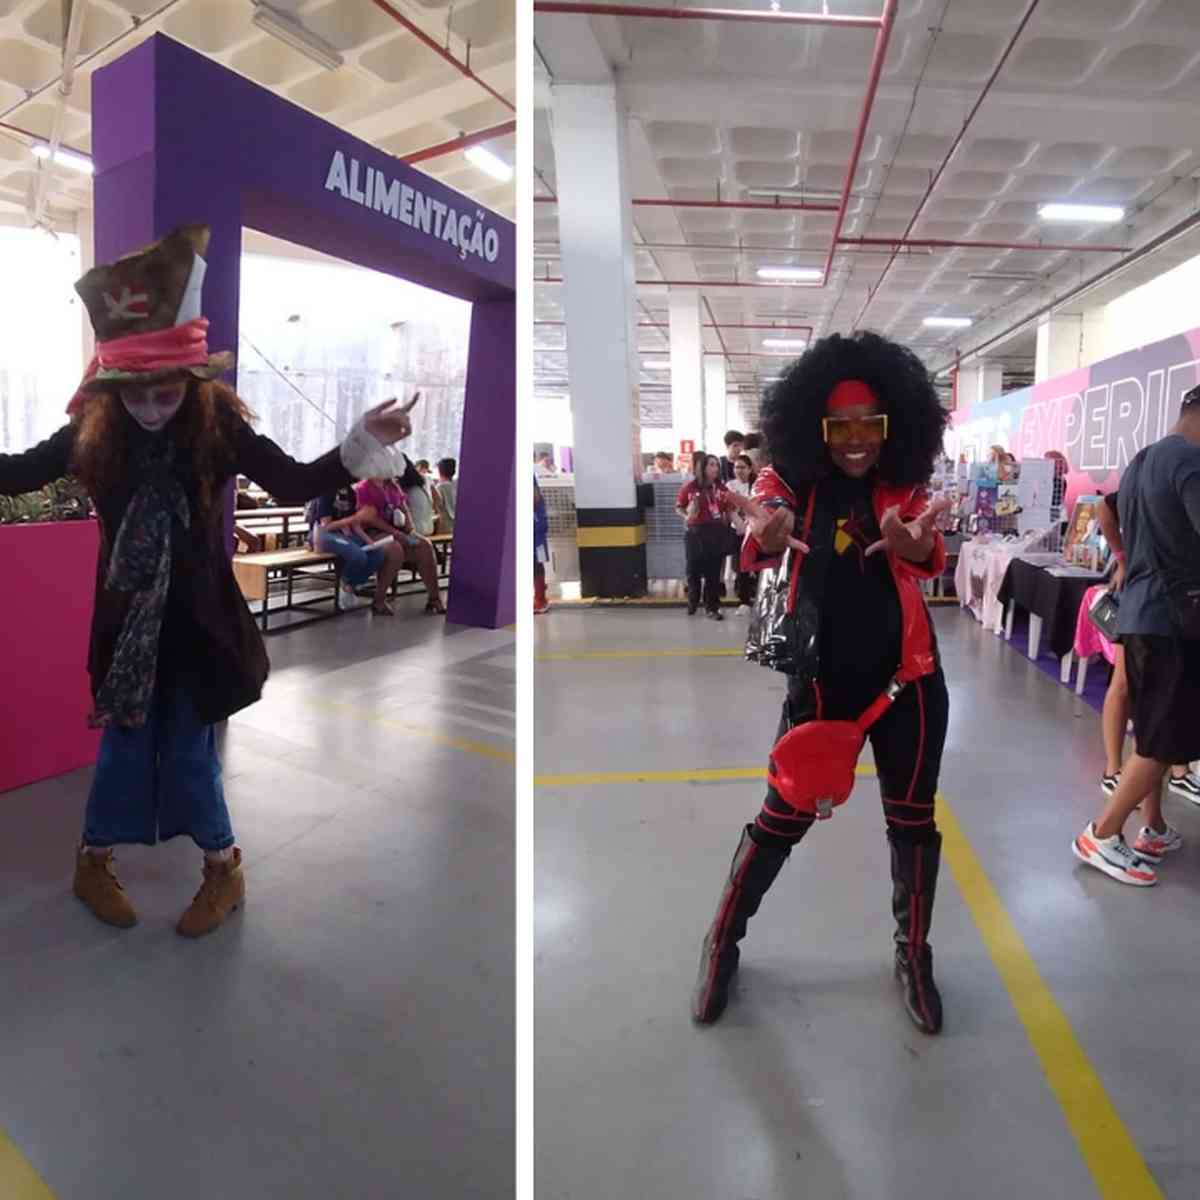 Shopping Nova Iguaçu terá a presença de cosplayers na estreia do novo Homem- Aranha